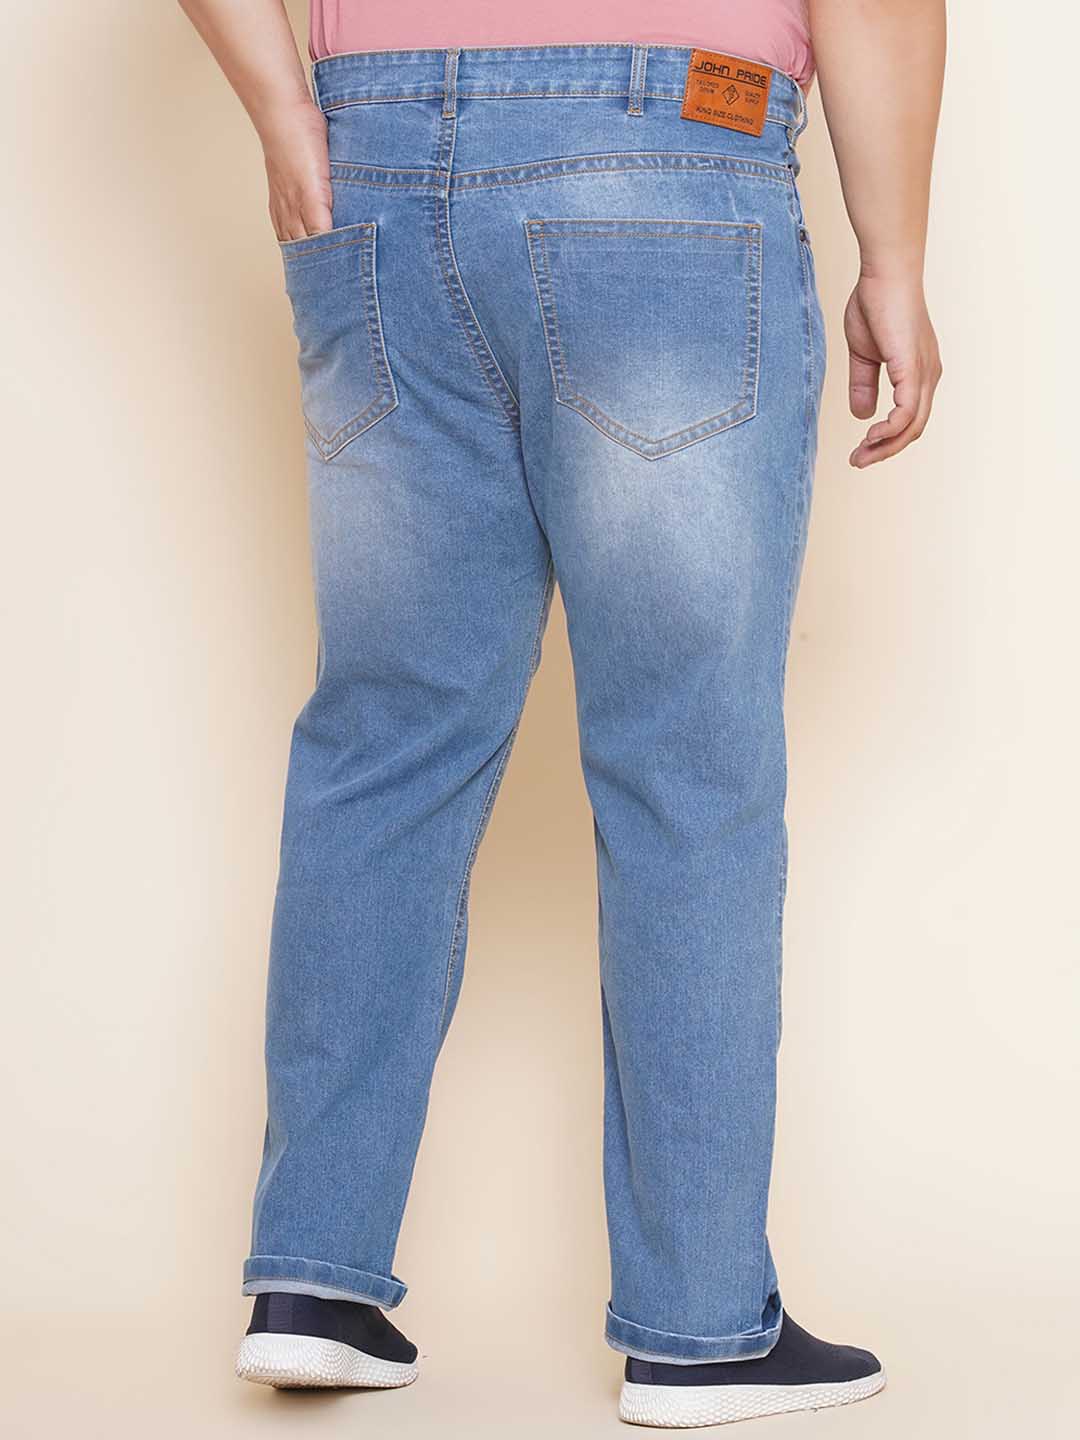 bottomwear/jeans/EJPJ25101/ejpj25101-5.jpg